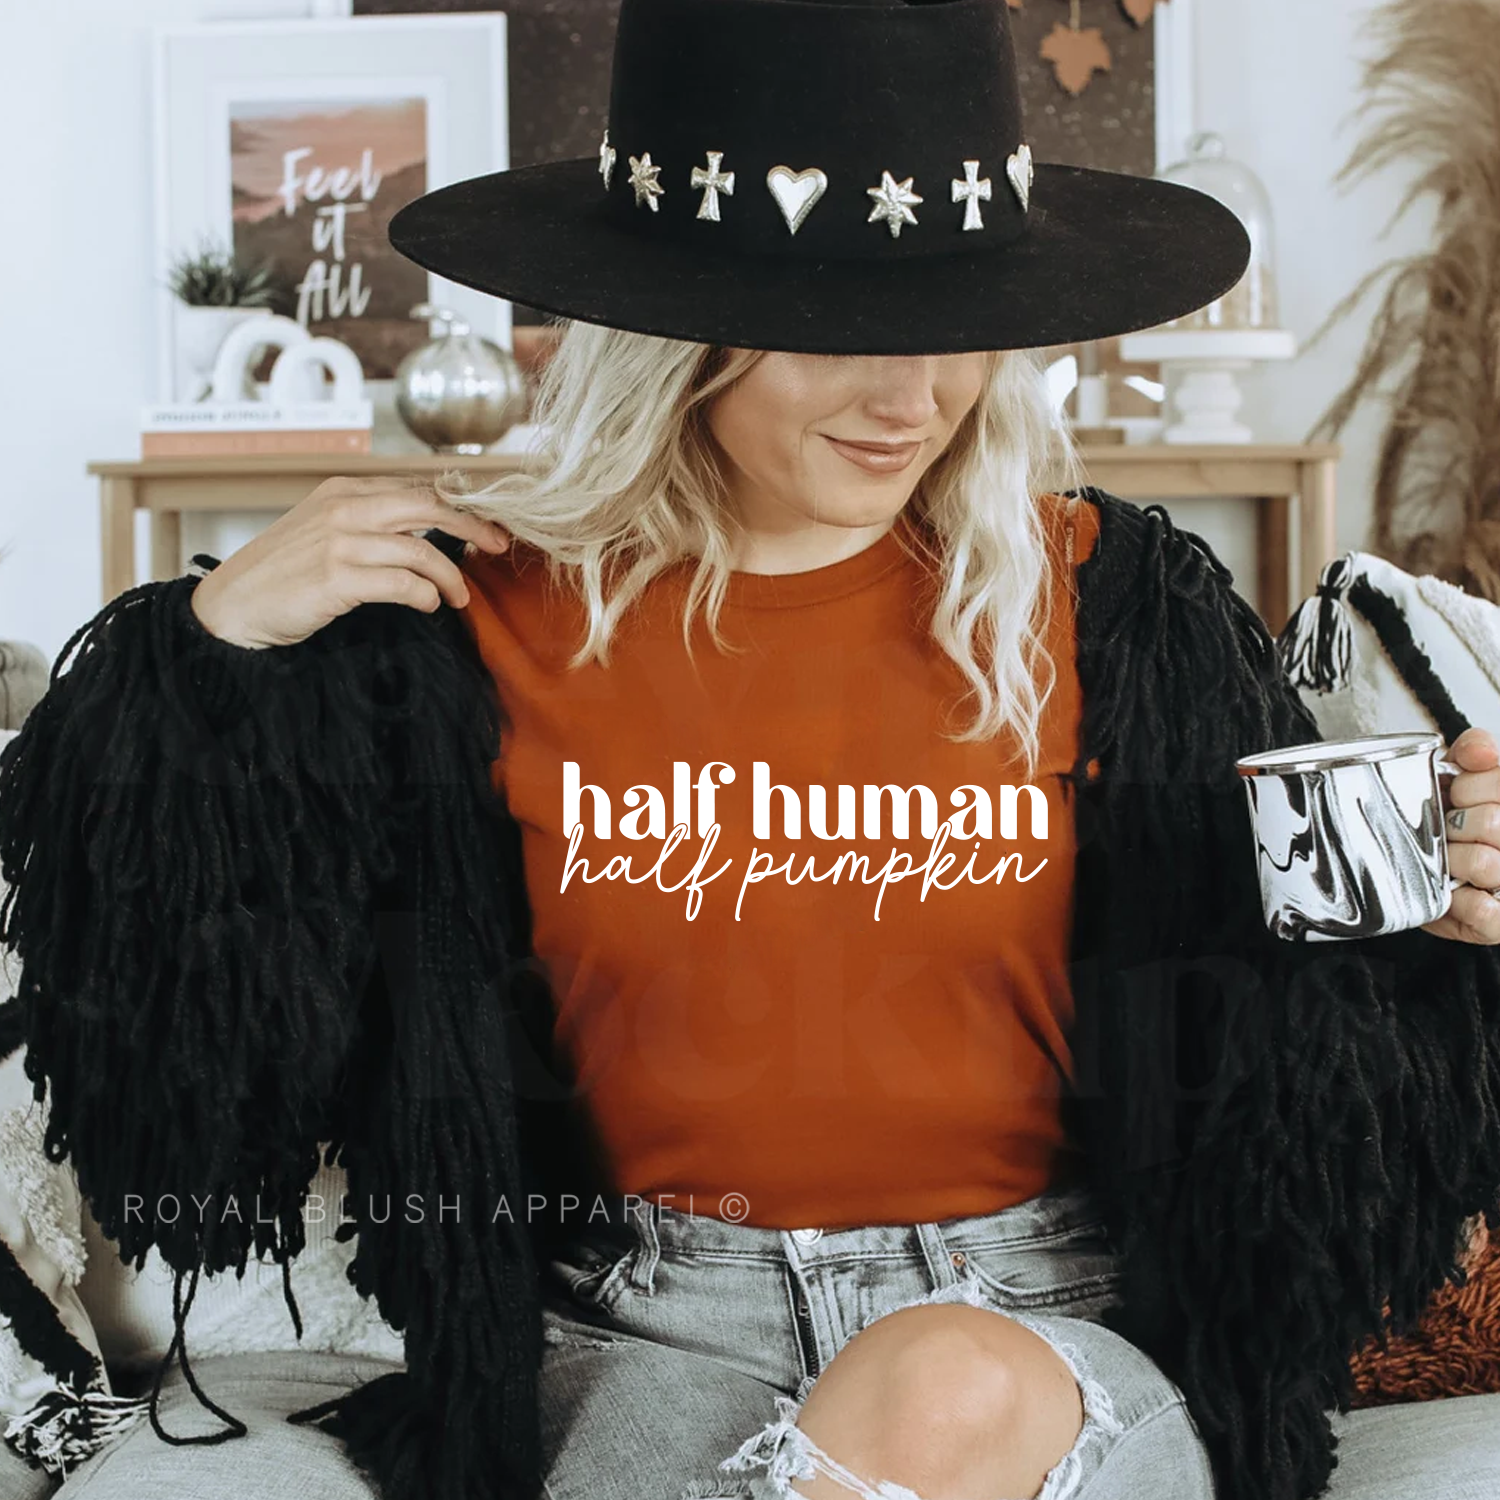 Half Human Half Pumpkin Relaxed Unisex T-shirt